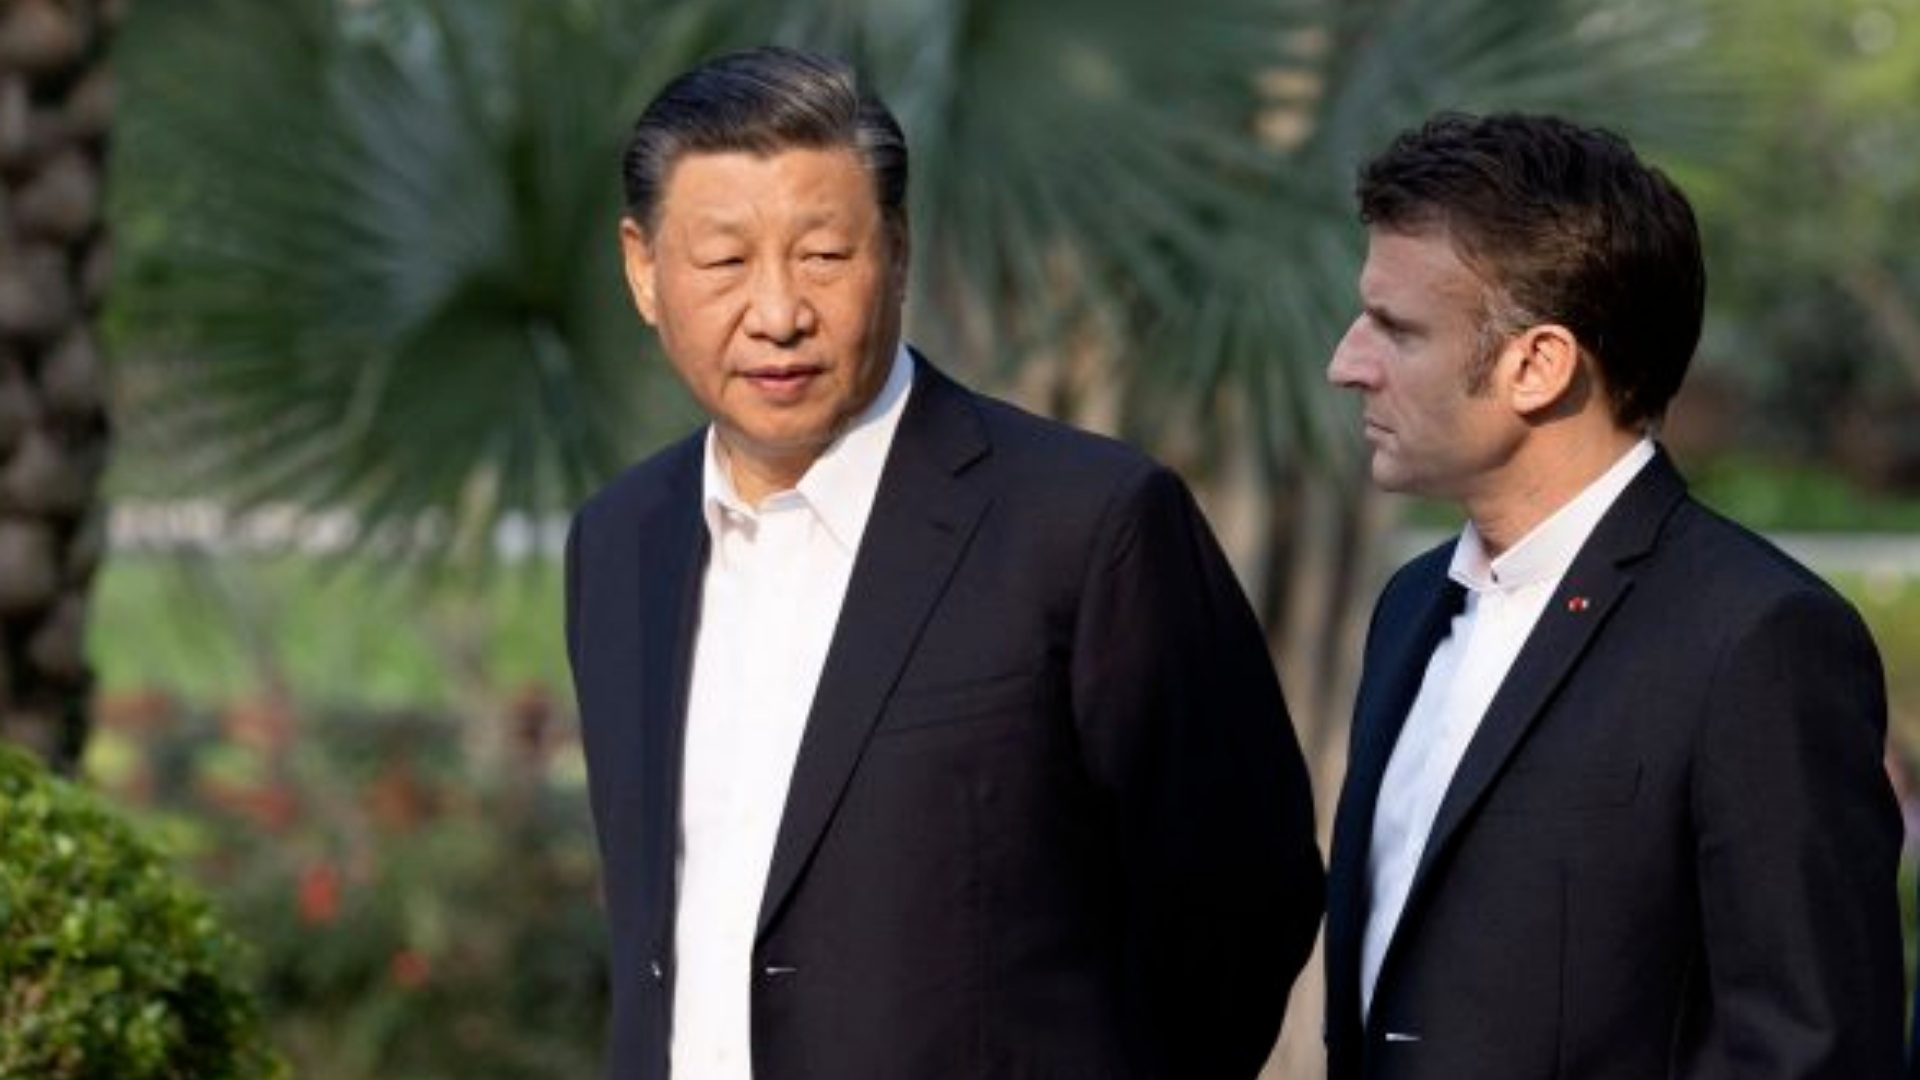 Vizita e parë pas 5 vitesh në Evropë, Xi Jinping në Paris, çfarë pritet t’i kërkojë Macron?!